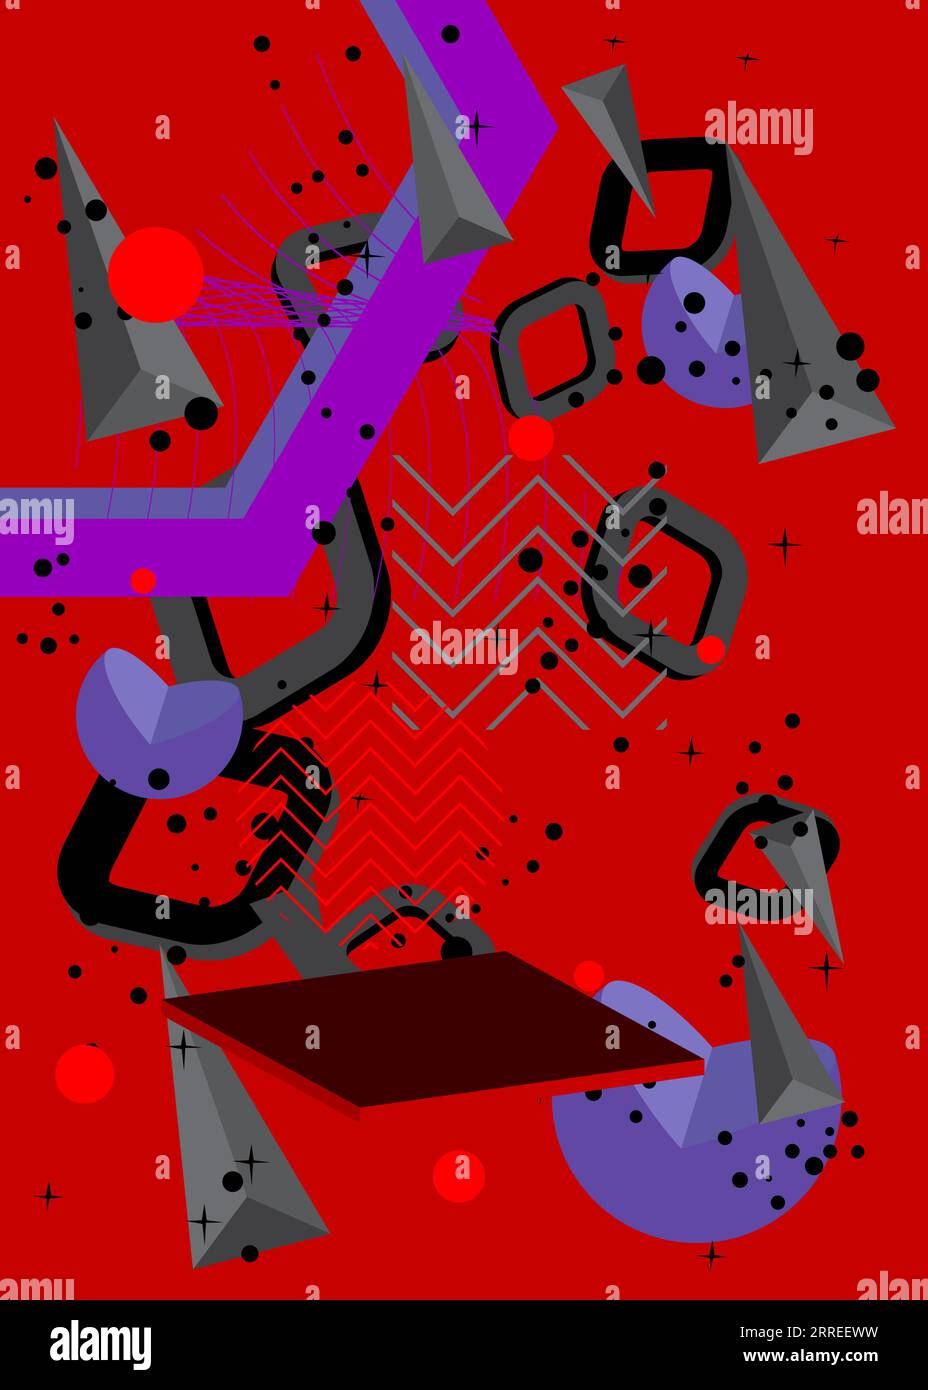 Couverture de thème rétro graphique géométrique noir, rouge et violet. Design d'affiche à éléments géométriques minimes. Modèle de formes abstraites vintage pour l'interdiction d'affiche Illustration de Vecteur